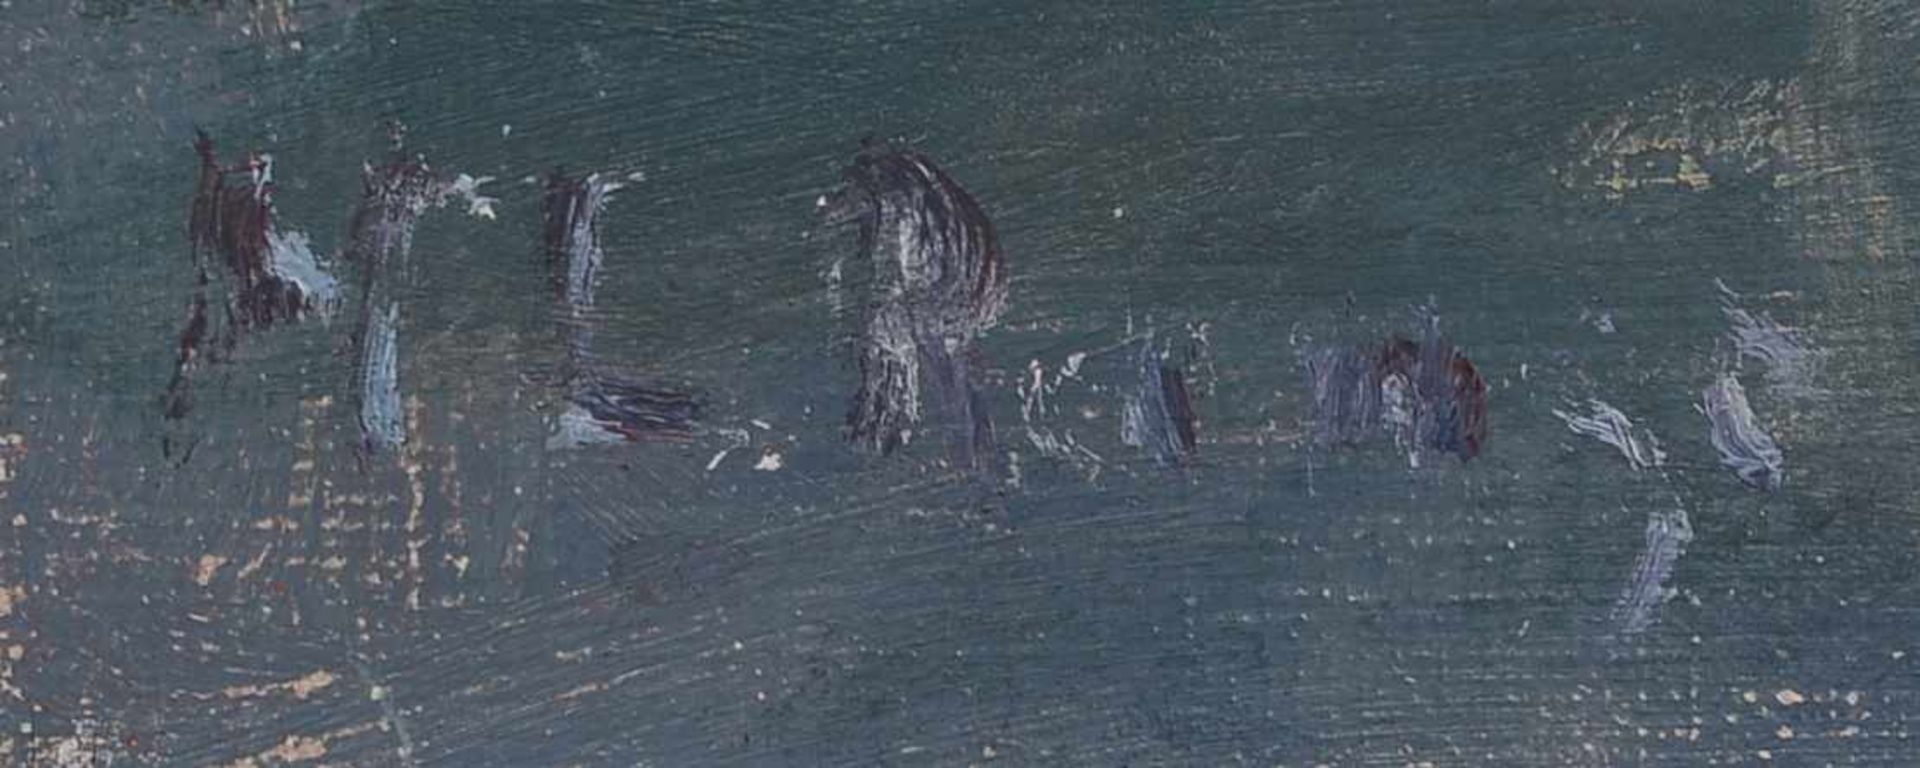 Gemälde, 'Seestück mit zwei Möven', Öl/Lw, unten links (nicht eindeutig leserlich) signiert 'M.L. - Bild 2 aus 2